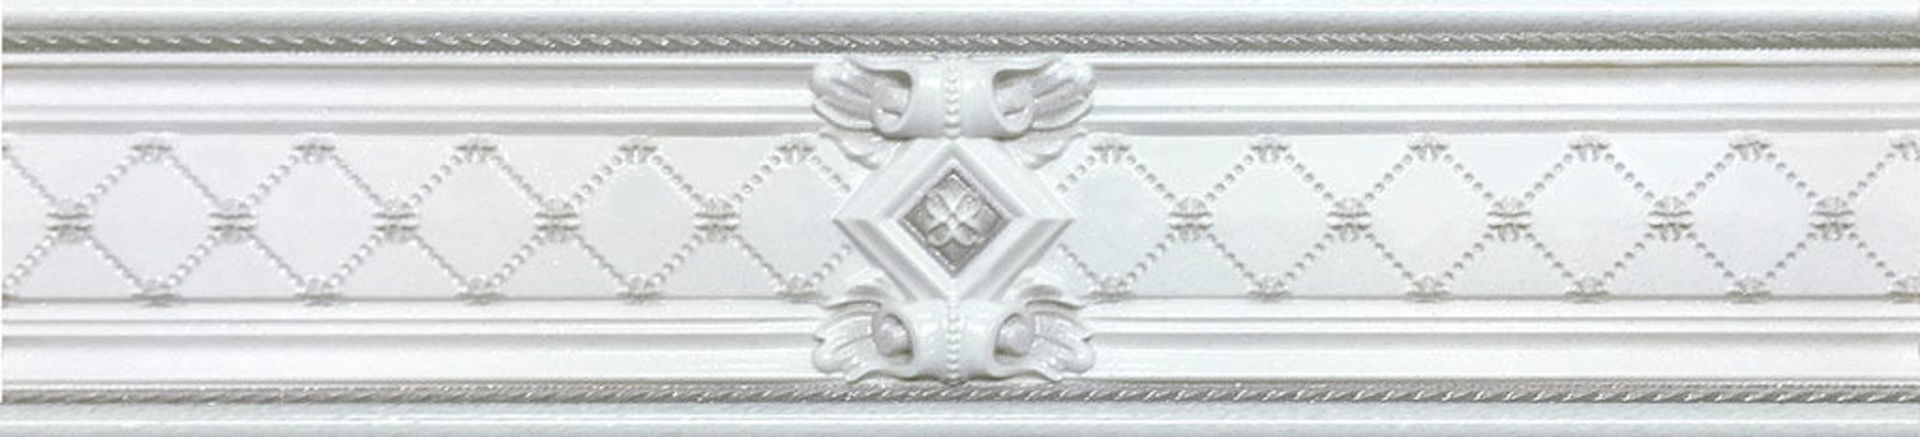 Керамическая плитка CEN. LONDON K 7*30 / коллекция BUXY-MODUS-LONDON / производитель DUAL GRES / страна Испания